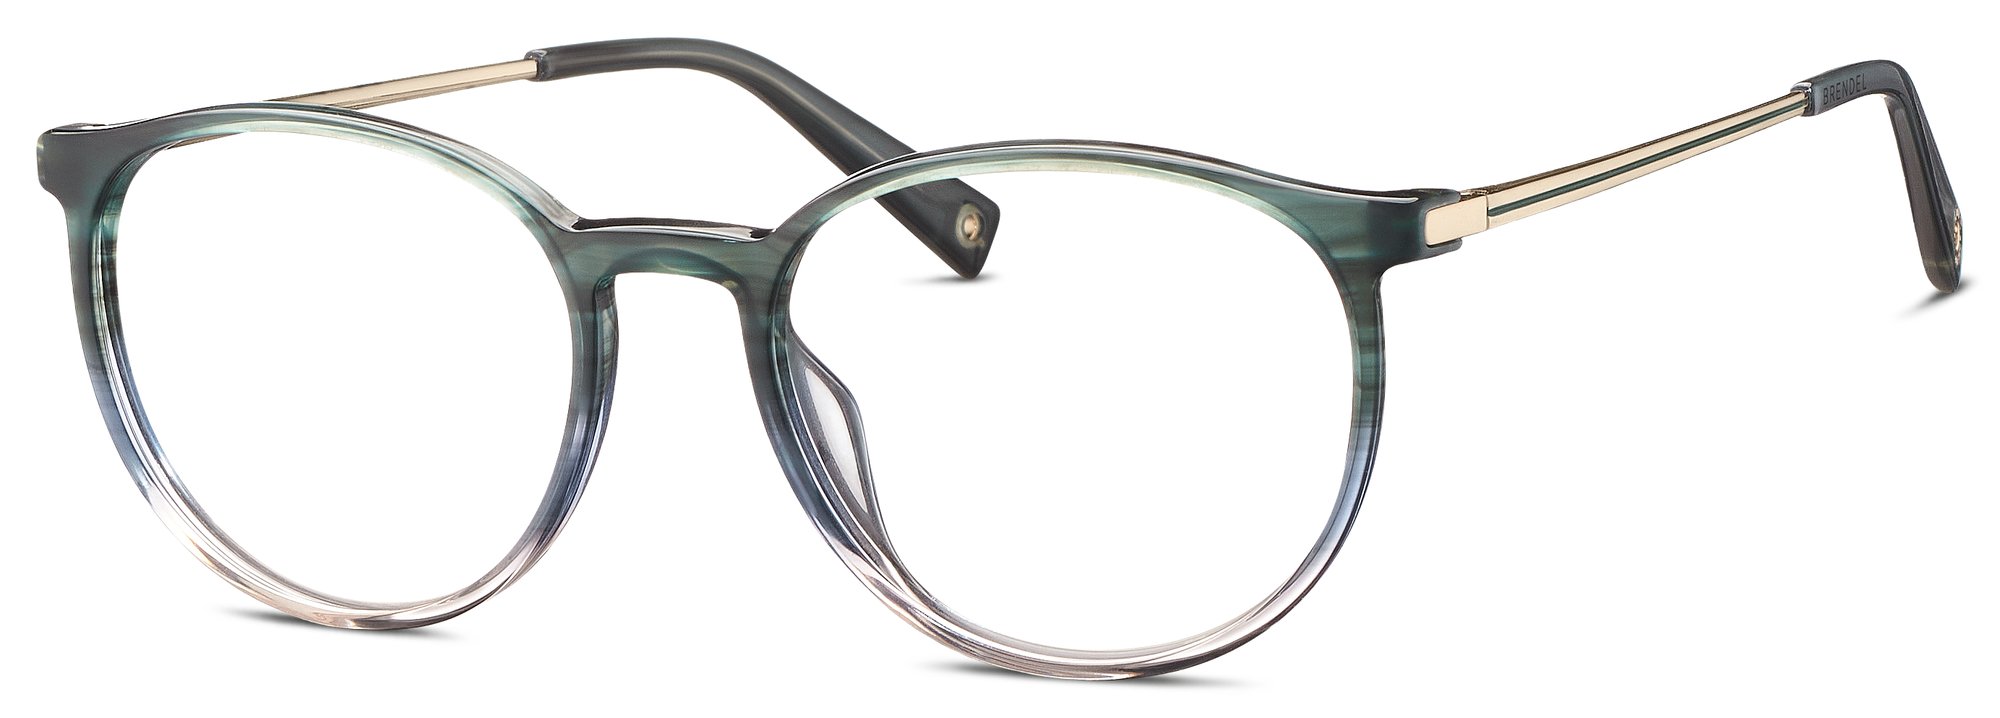 Das Bild zeigt die Korrektionsbrille 903156 47 von der Marke Brendel in grün-blau verlauf.